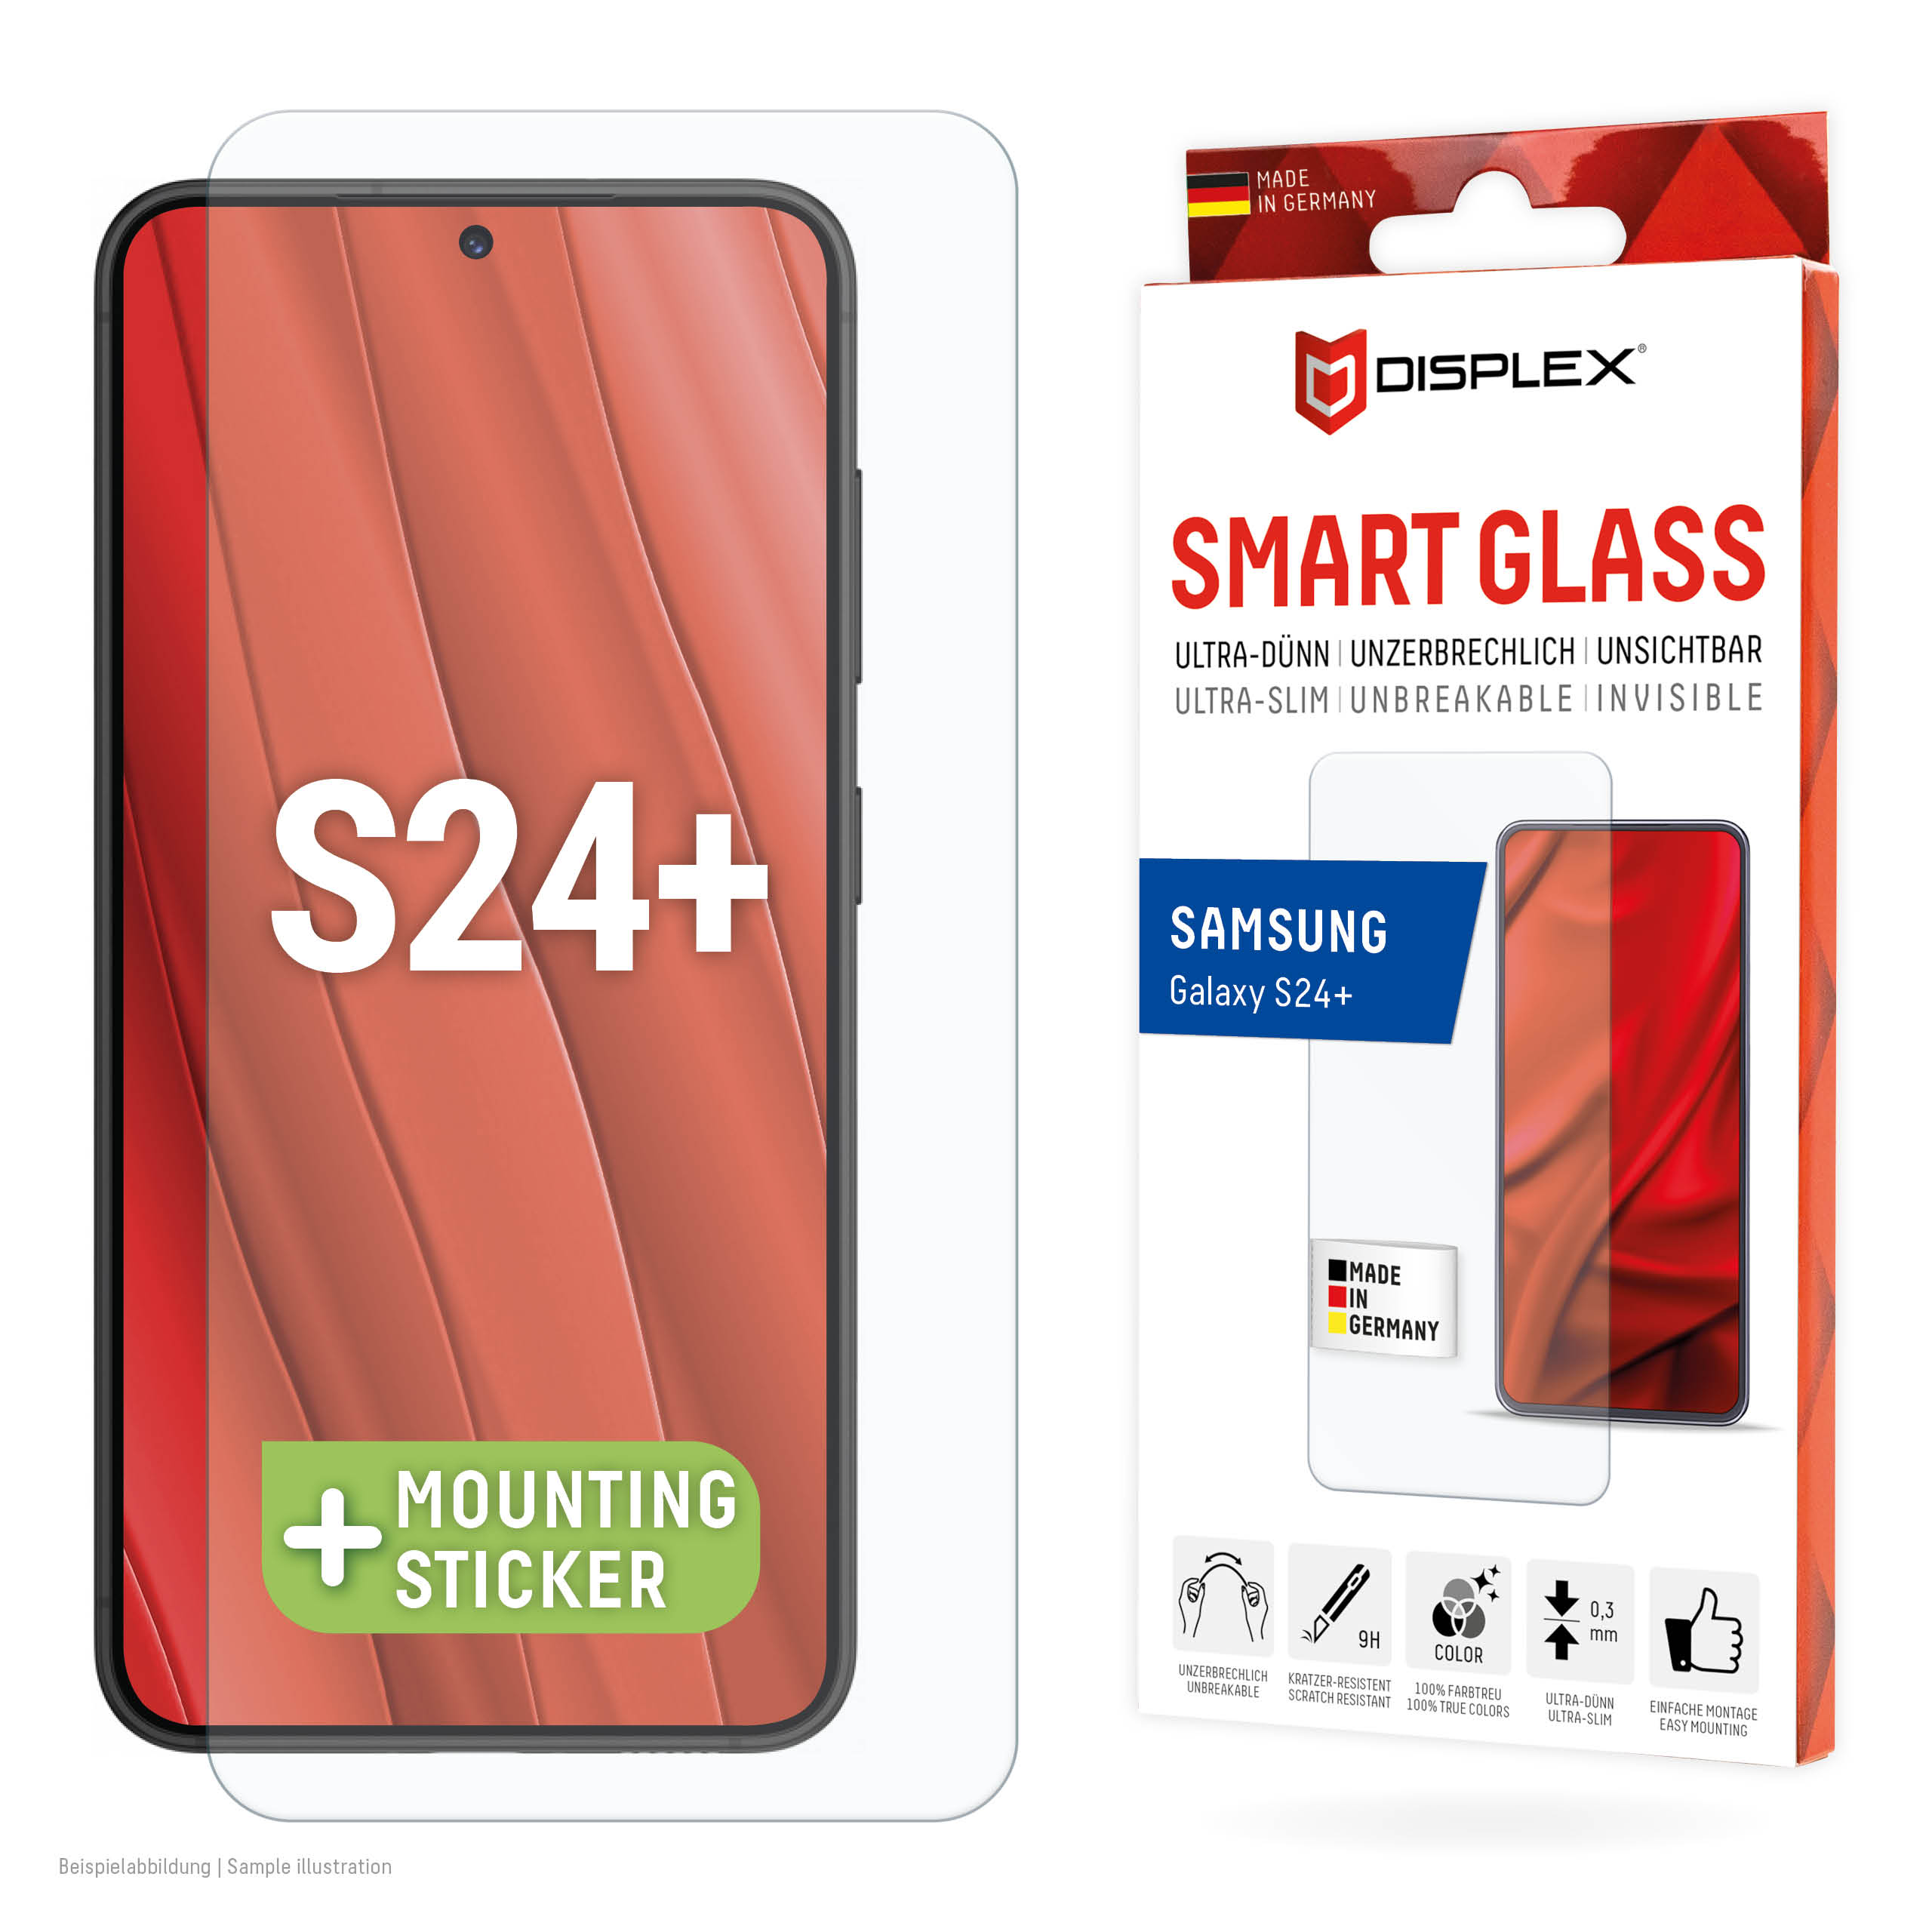 01907-Samsung-Galaxy-S24-Smart-Glass-2D_EN